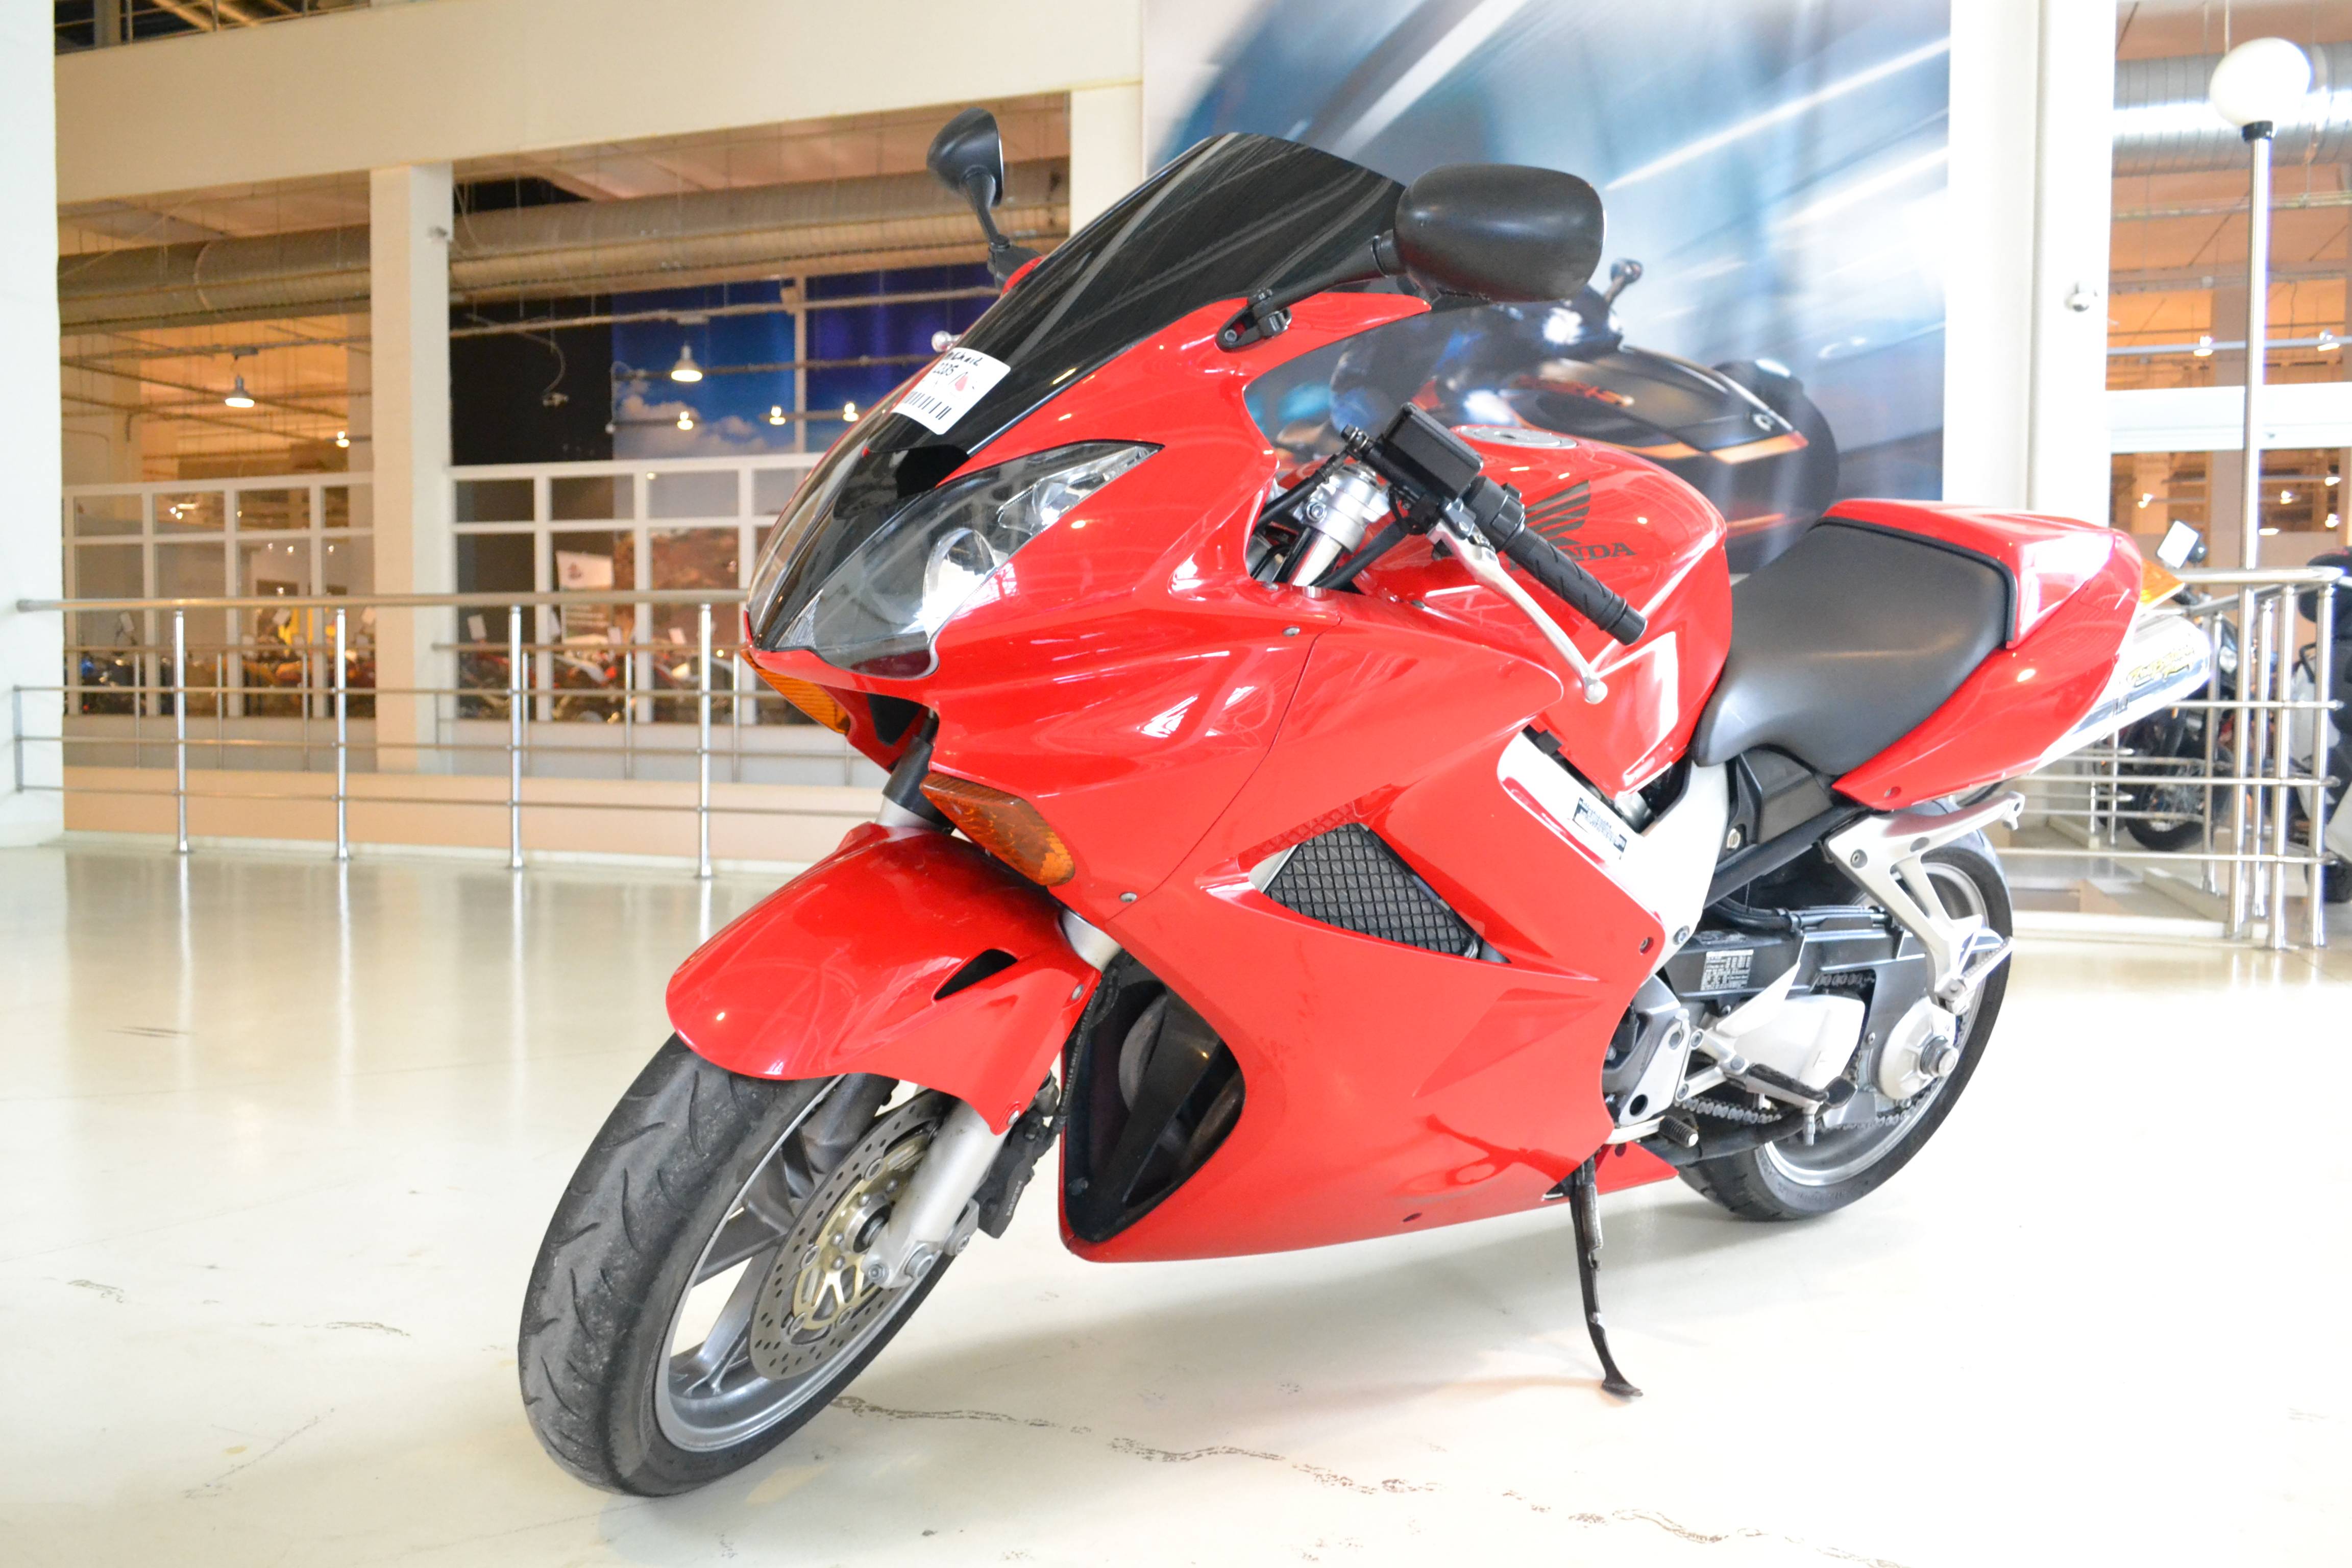 Honda vfr (хонда вфр) 800 — отличный спортивно-туристический мотоцикл